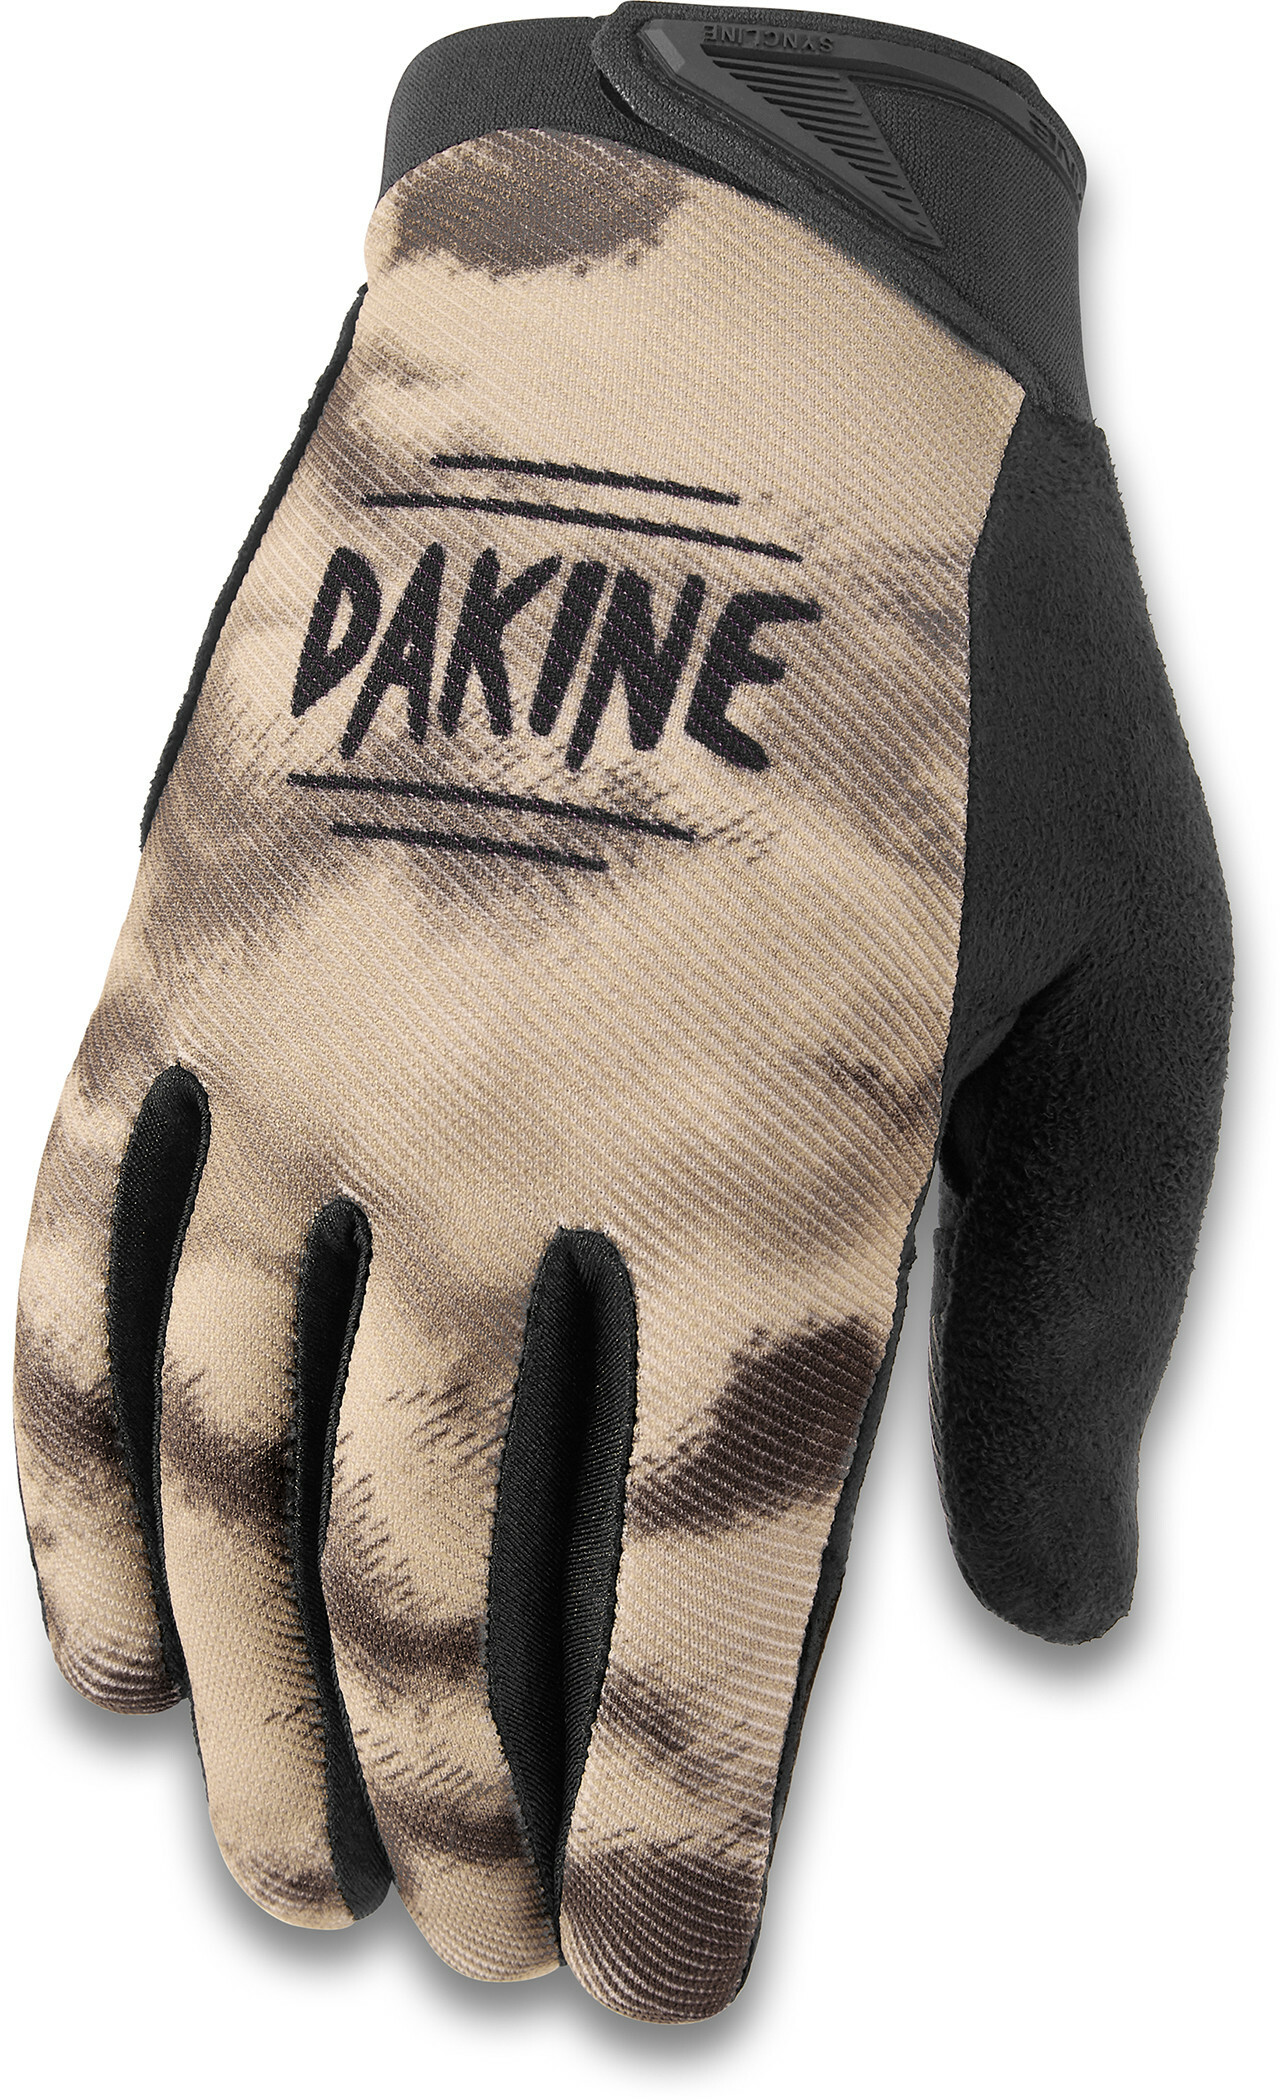 Syncline Bike Glove